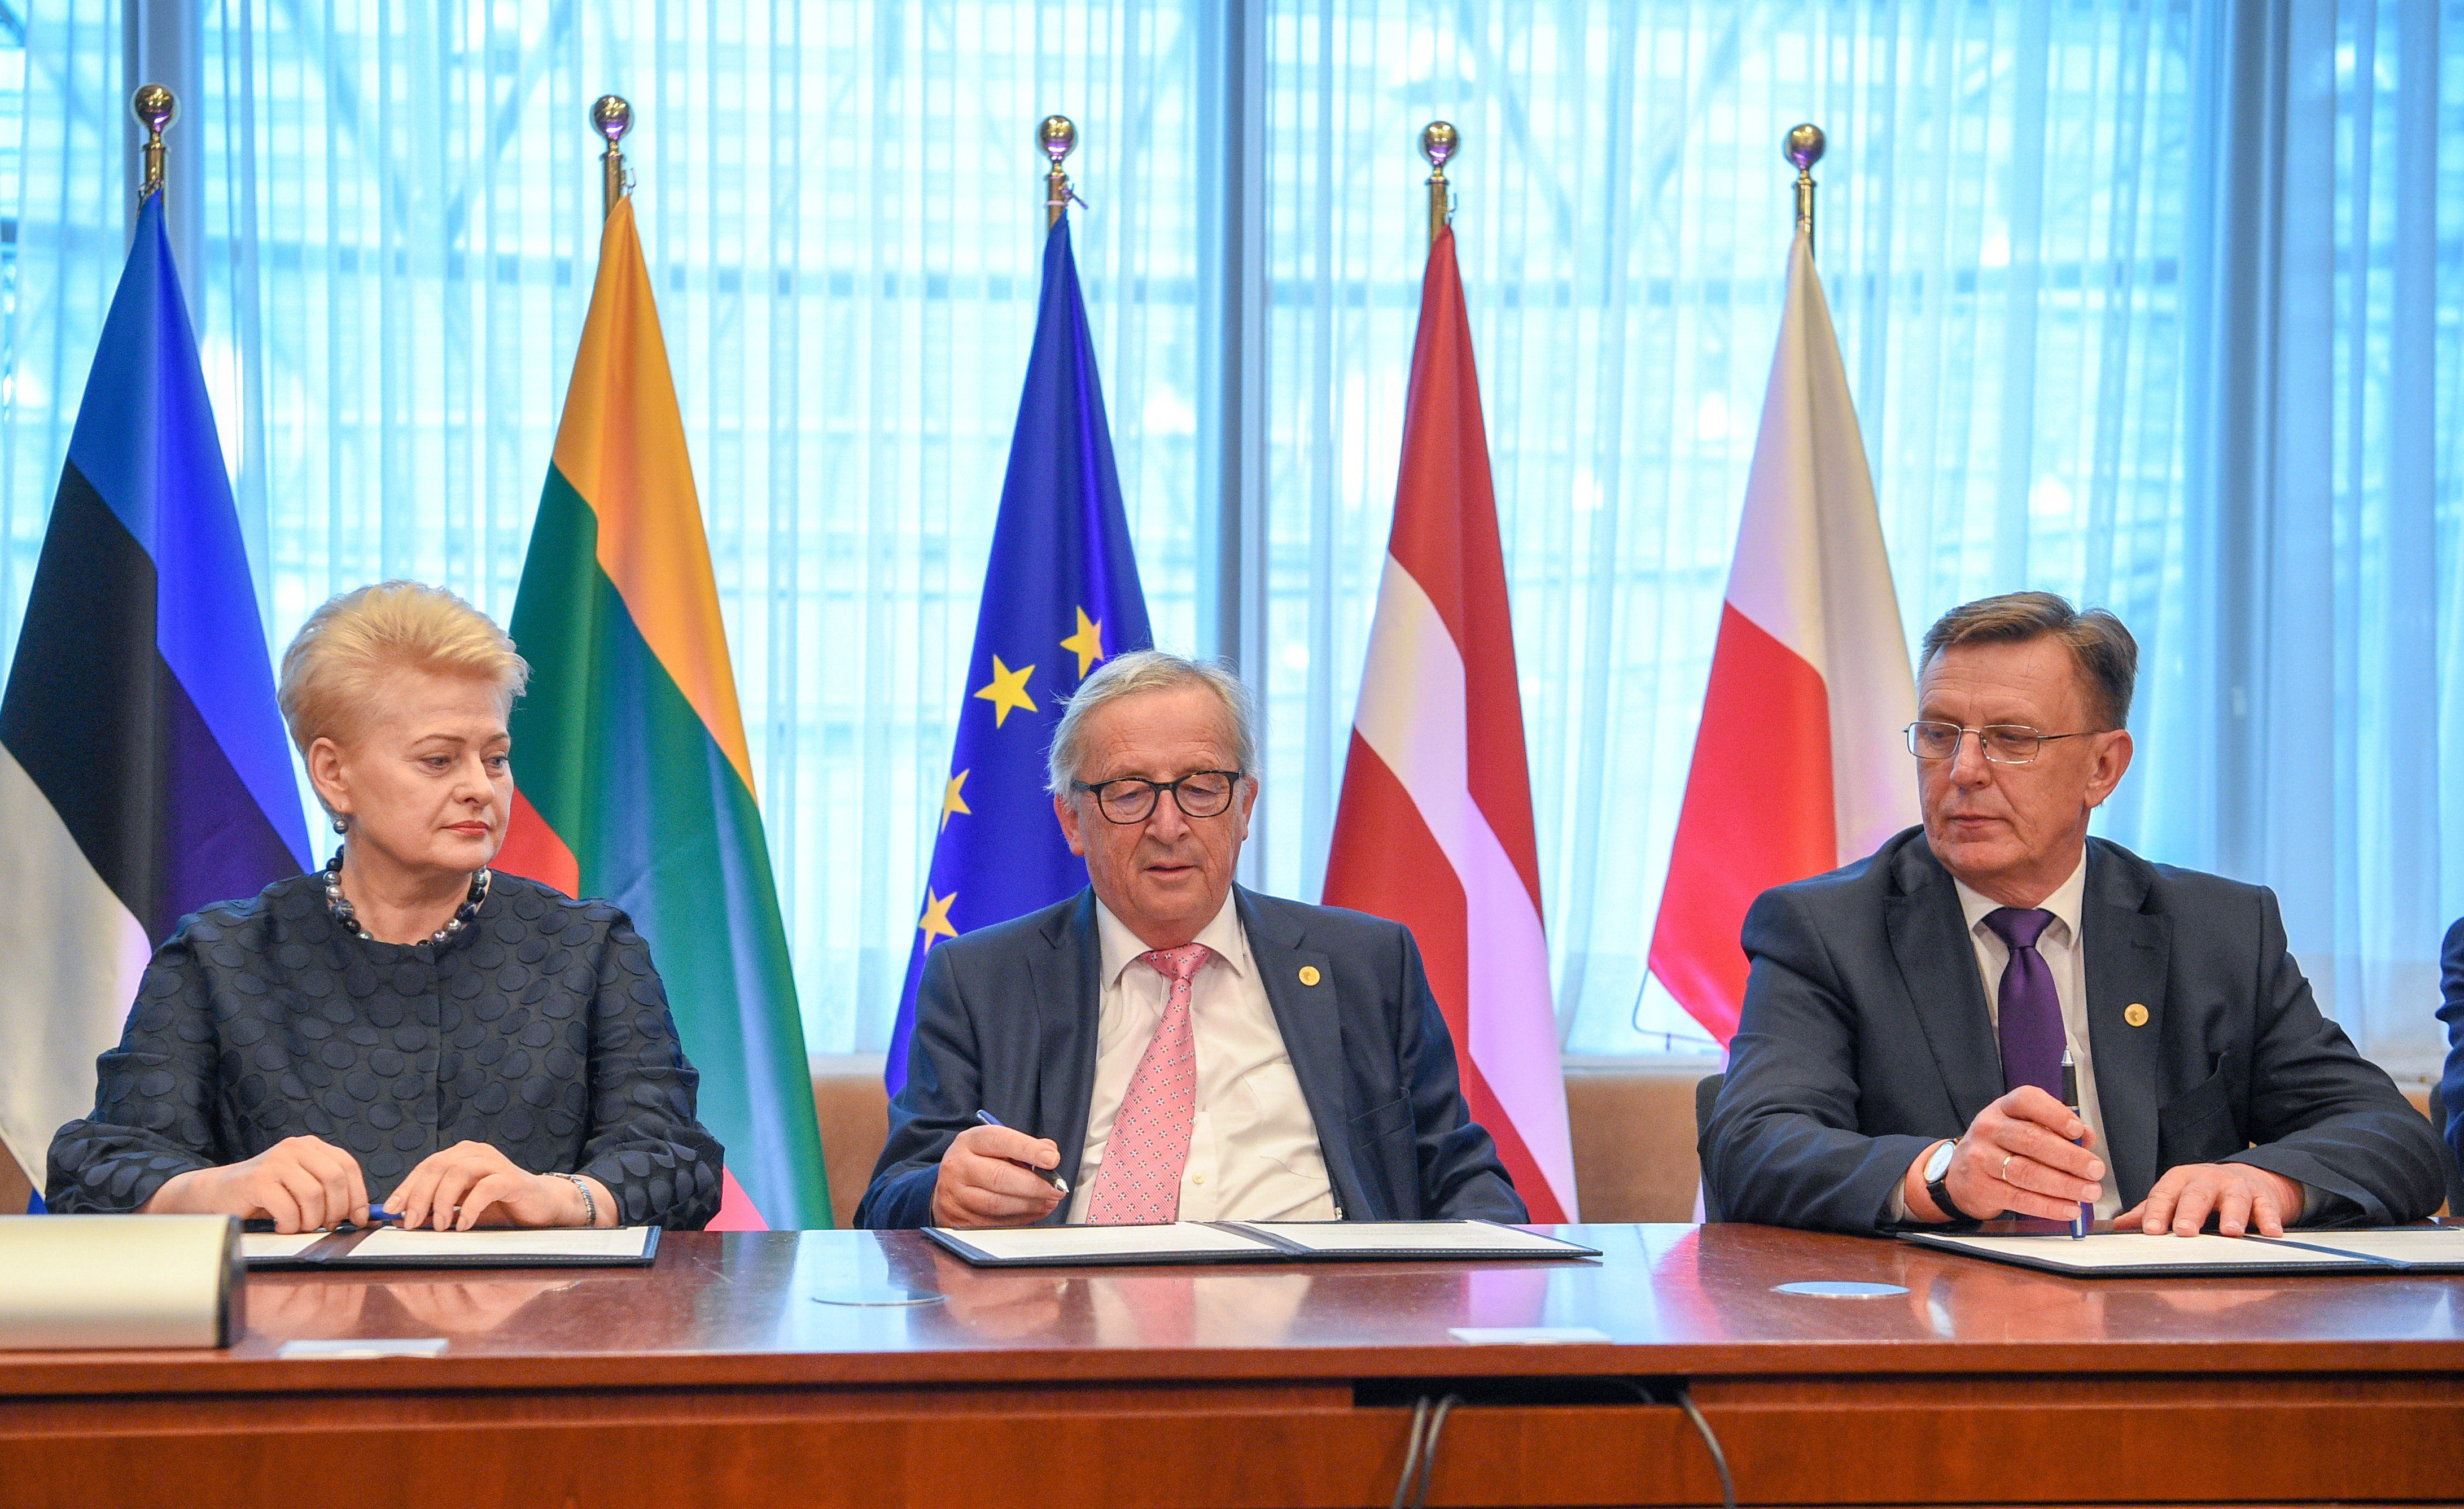 Подписание политического соглашения о синхронизации электросетей трех стран Балтии с сетями континентальной Европы, 28 июня 2018